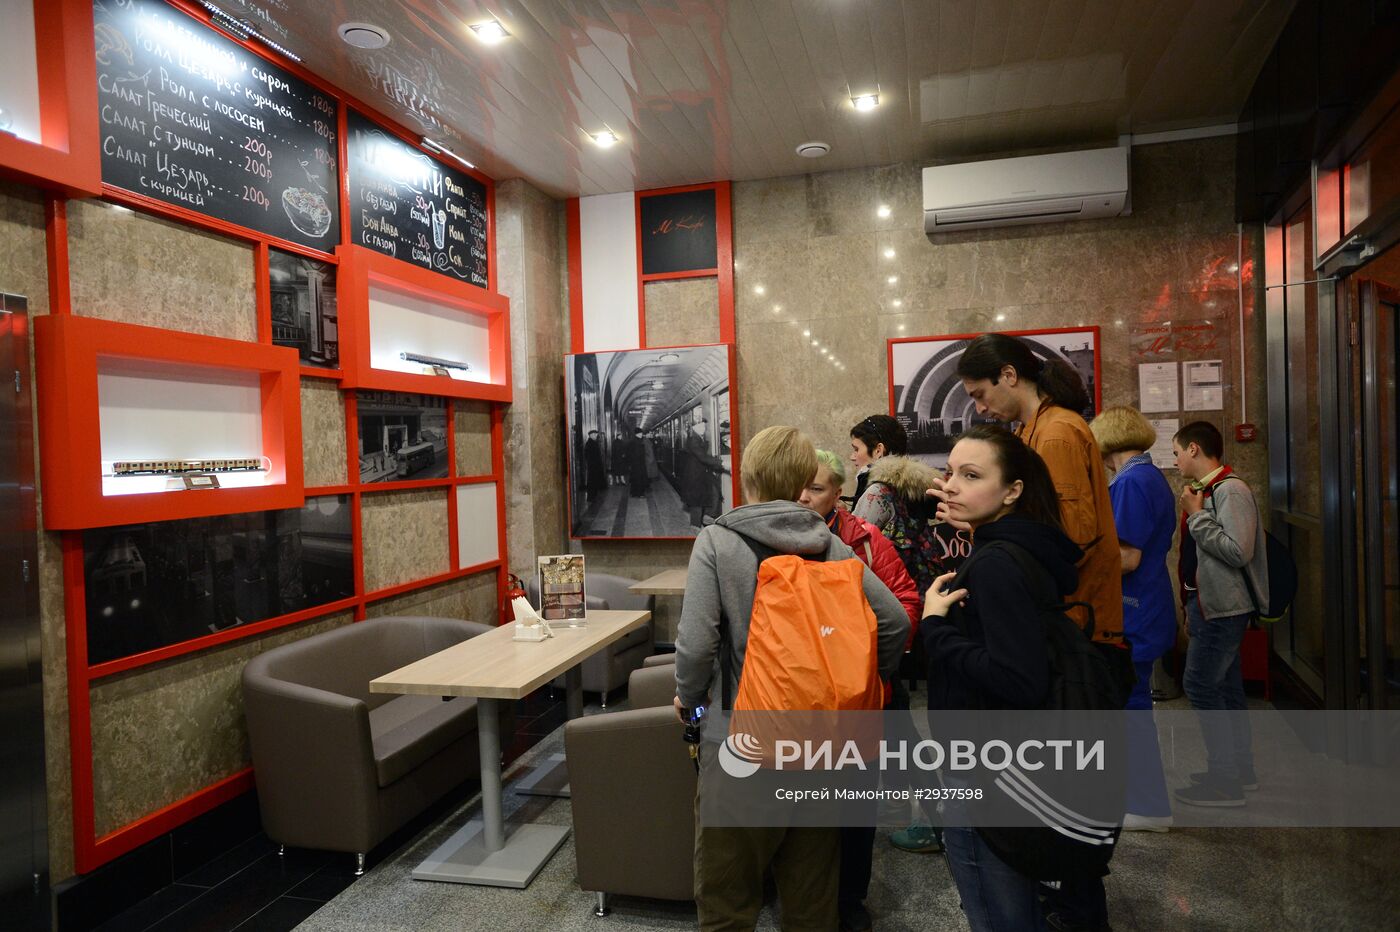 Открытие первой в Московском метрополитене кофейни "М Кафе"